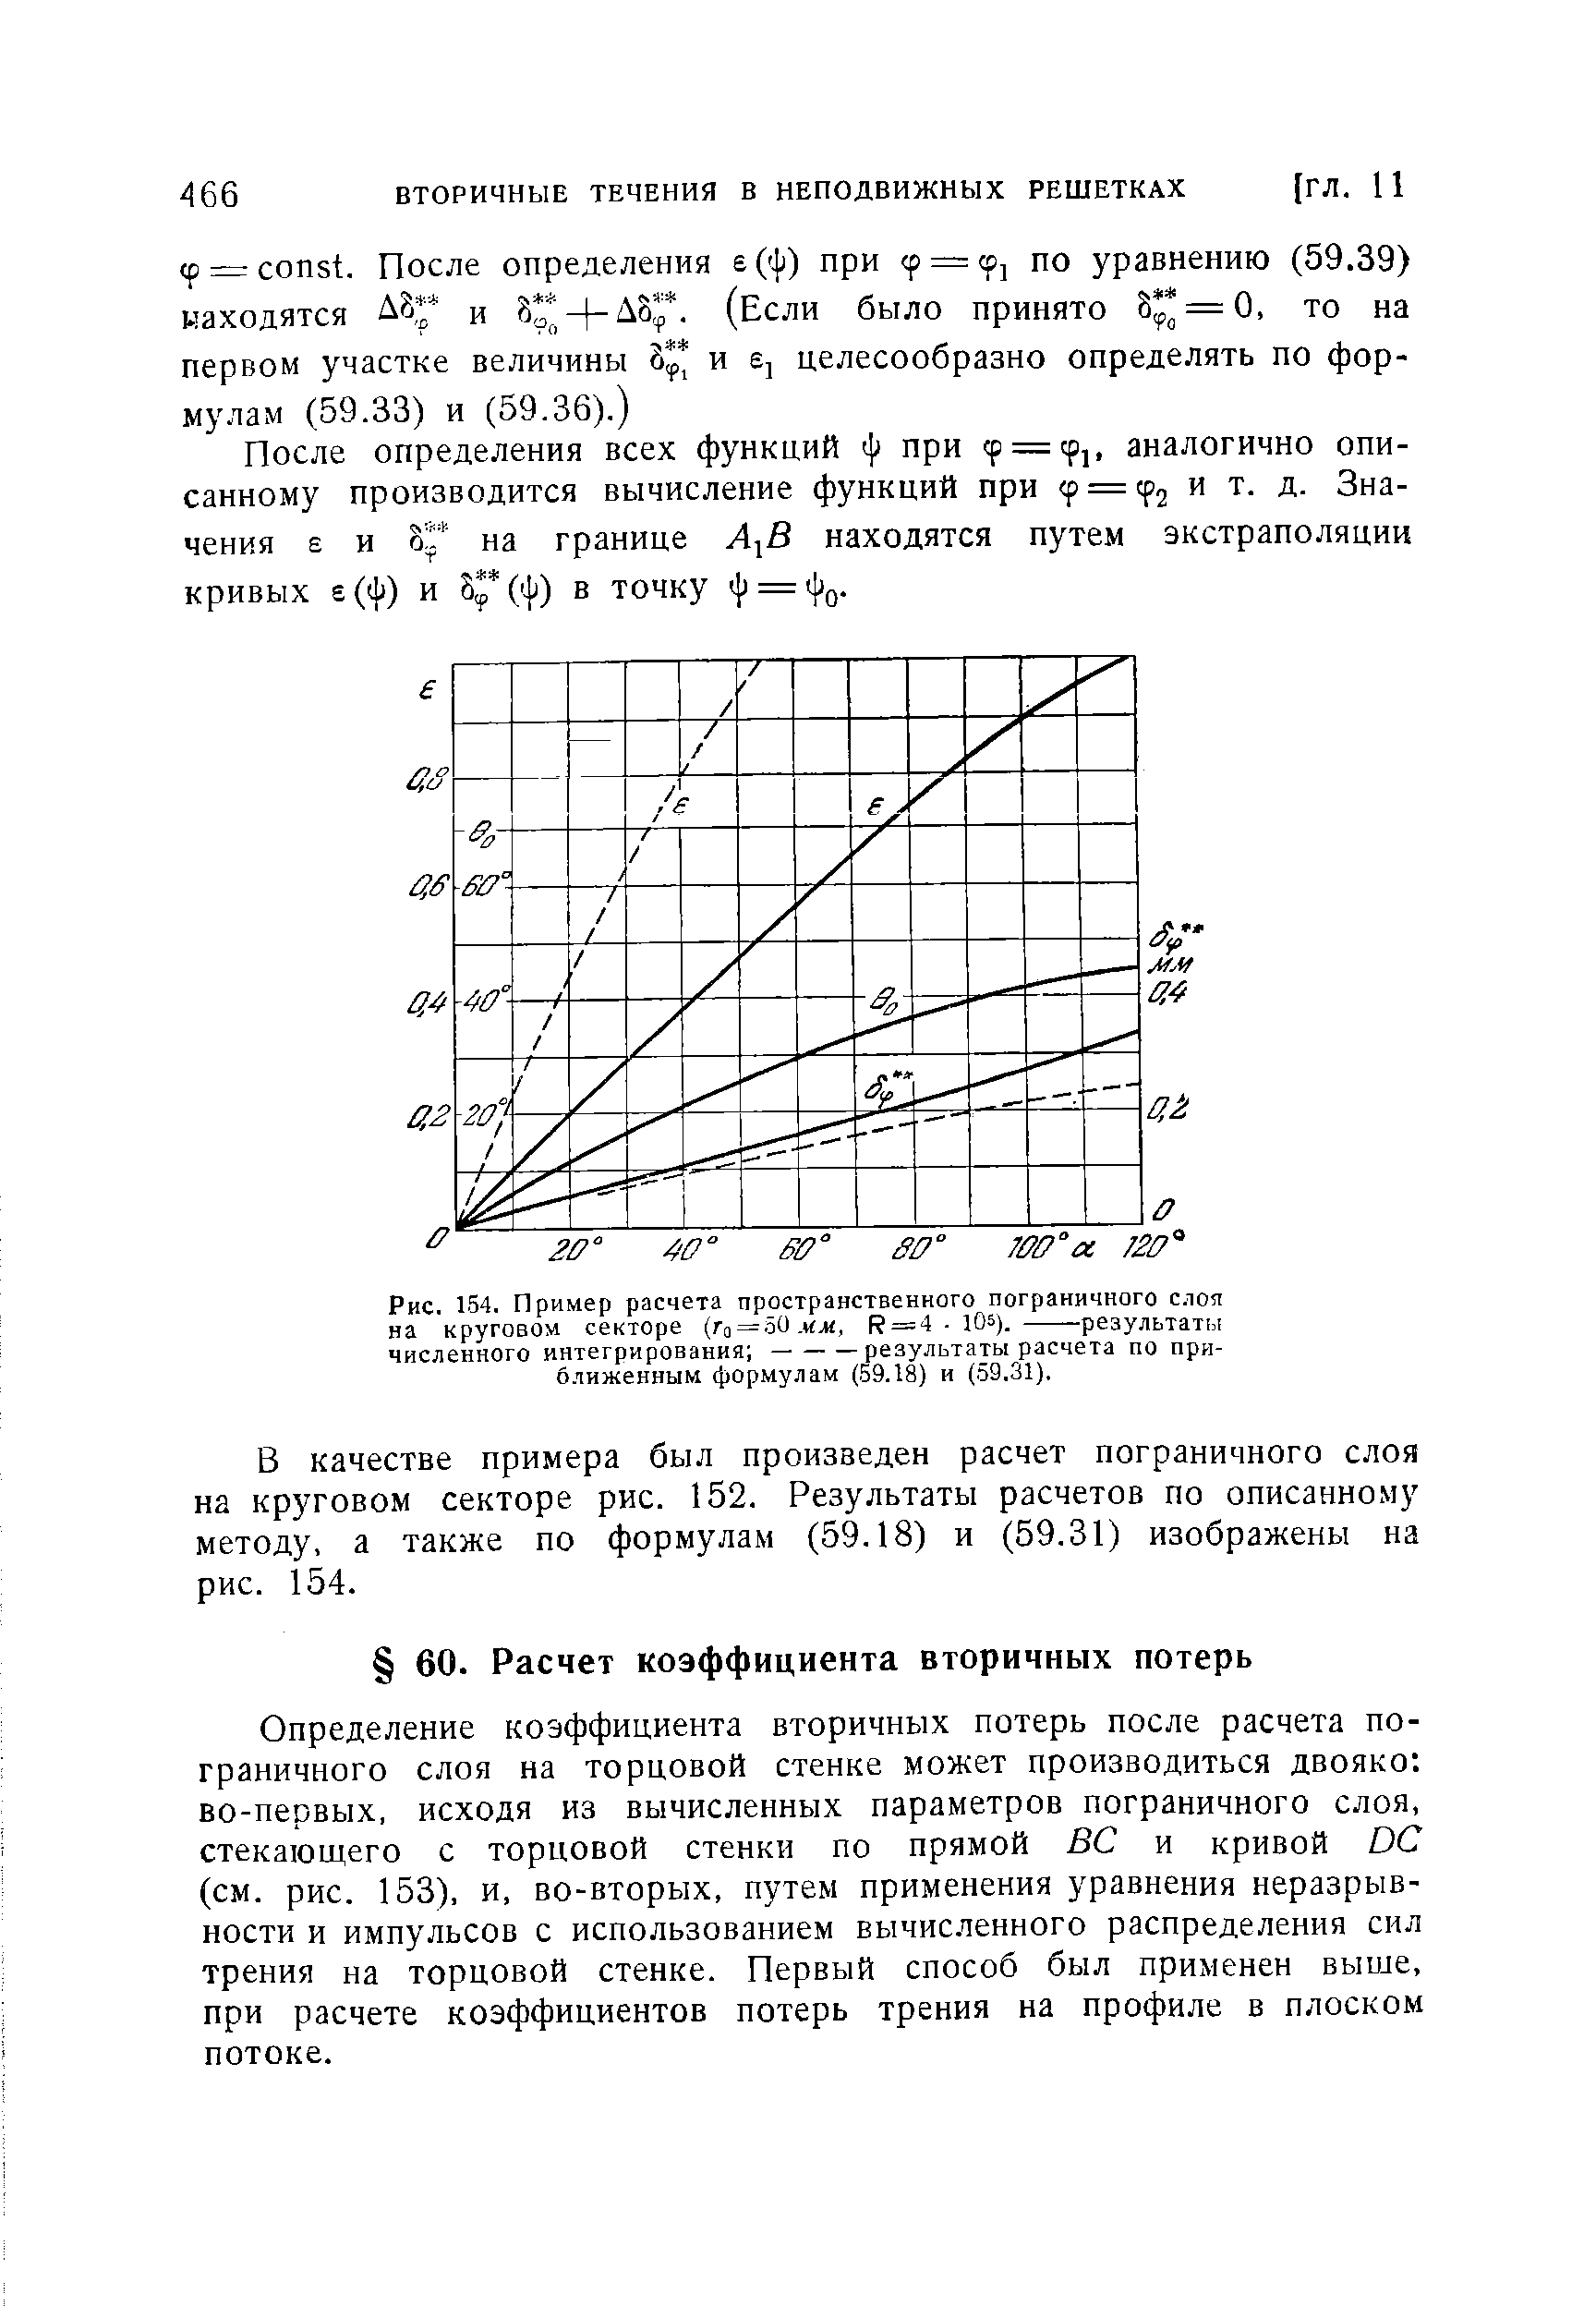 Определение коэффициента вторичных потерь после расчета пограничного слоя на торцовой стенке может производиться двояко во-первых, исходя из вычисленных параметров пограничного слоя, стекающего с торцовой стенки по прямой ВС и кривой ОС (см. рис. 153), и, во-вторых, путем применения уравнения неразрывности и импульсов с использованием вычисленного распределения сил трения на торцовой стенке. Первый способ был применен выше, при расчете коэффициентов потерь трения на профиле в плоском потоке.
